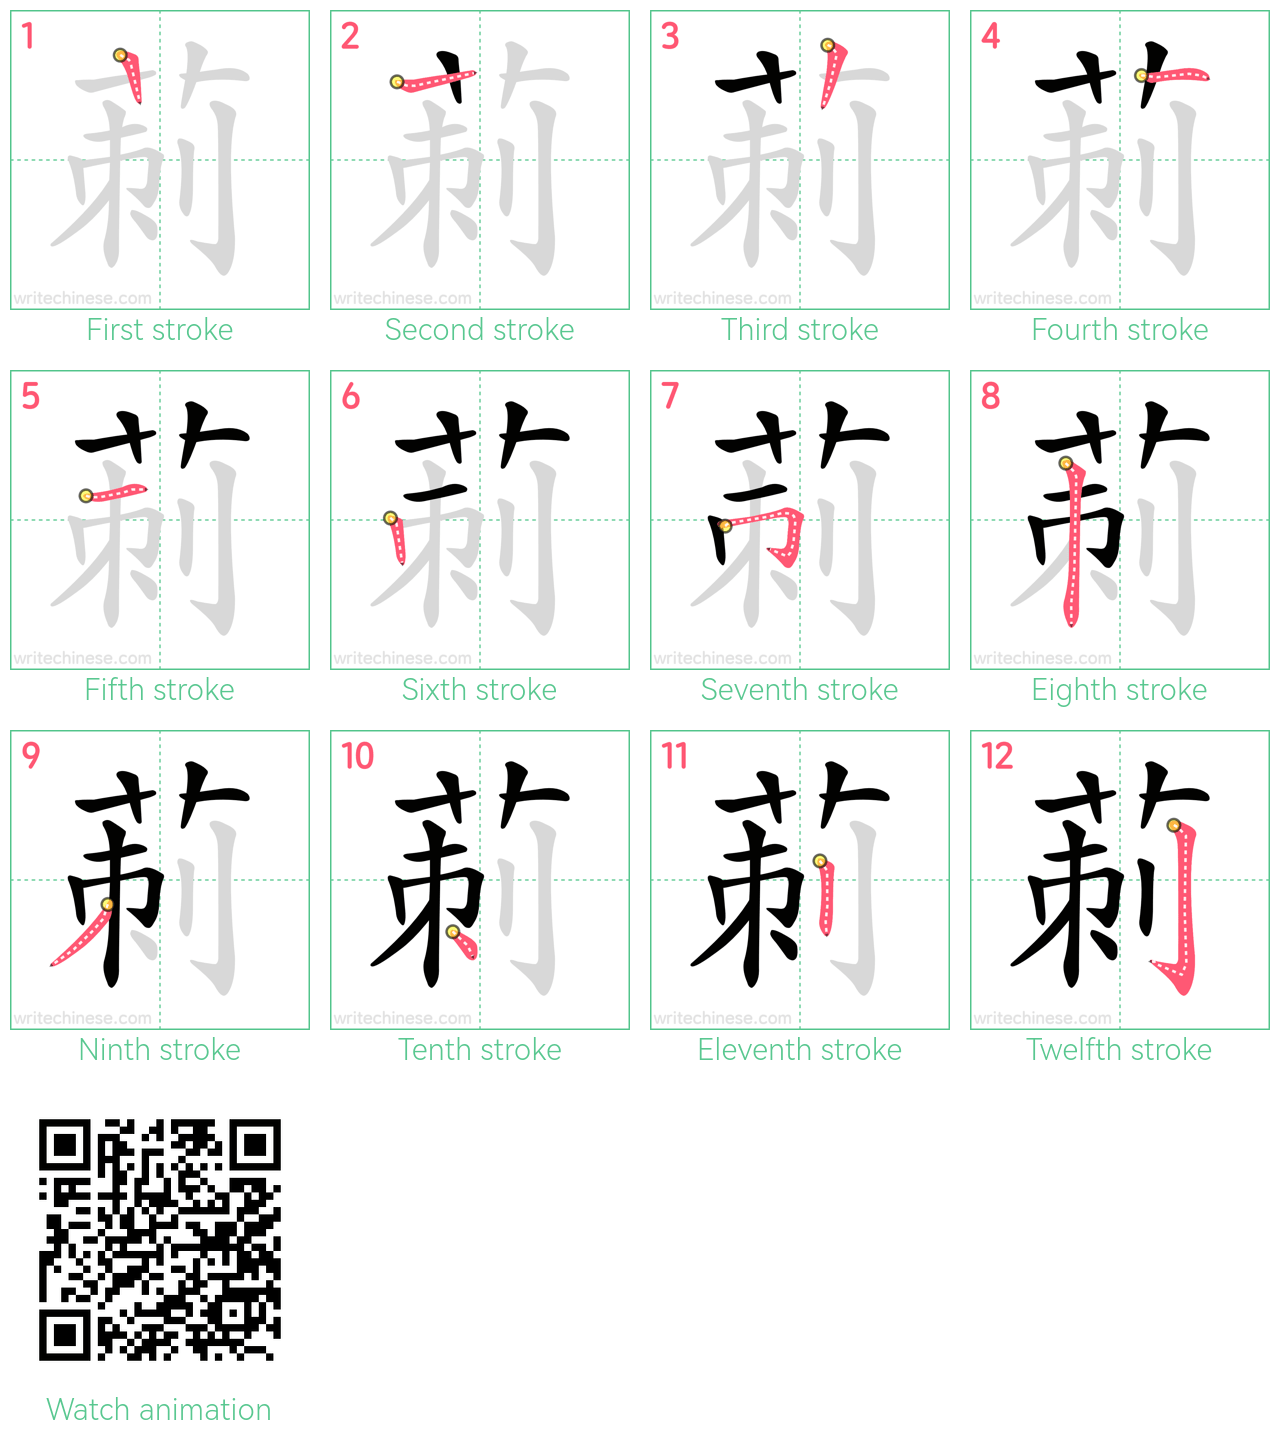 莿 step-by-step stroke order diagrams